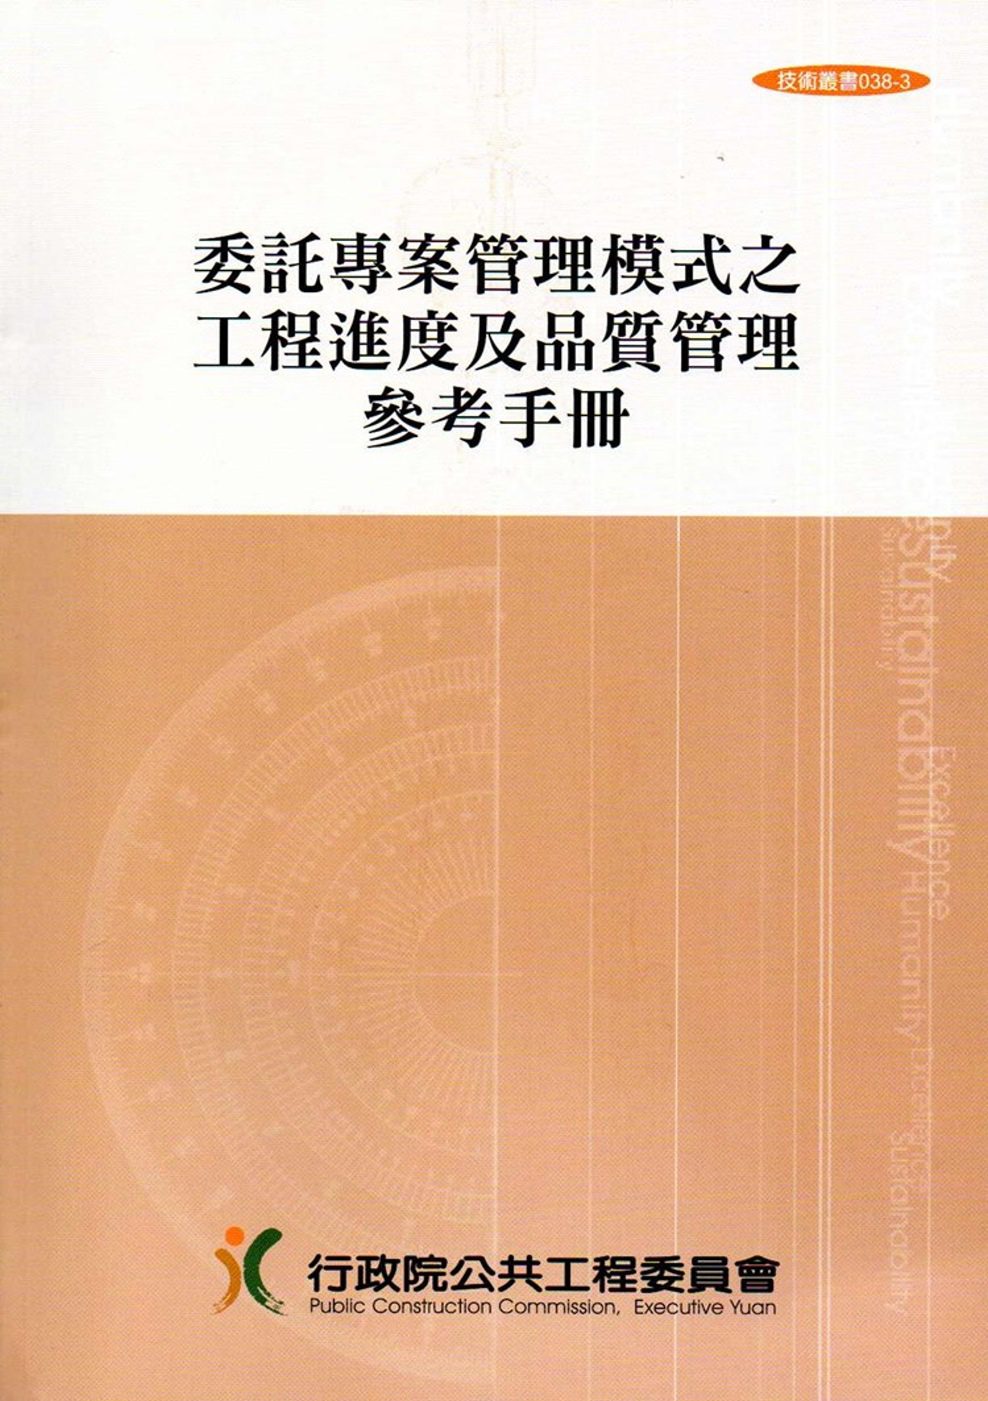 委託專案管理模式之工程進度及品質管理參考手冊(技術叢書038-3)4版5刷